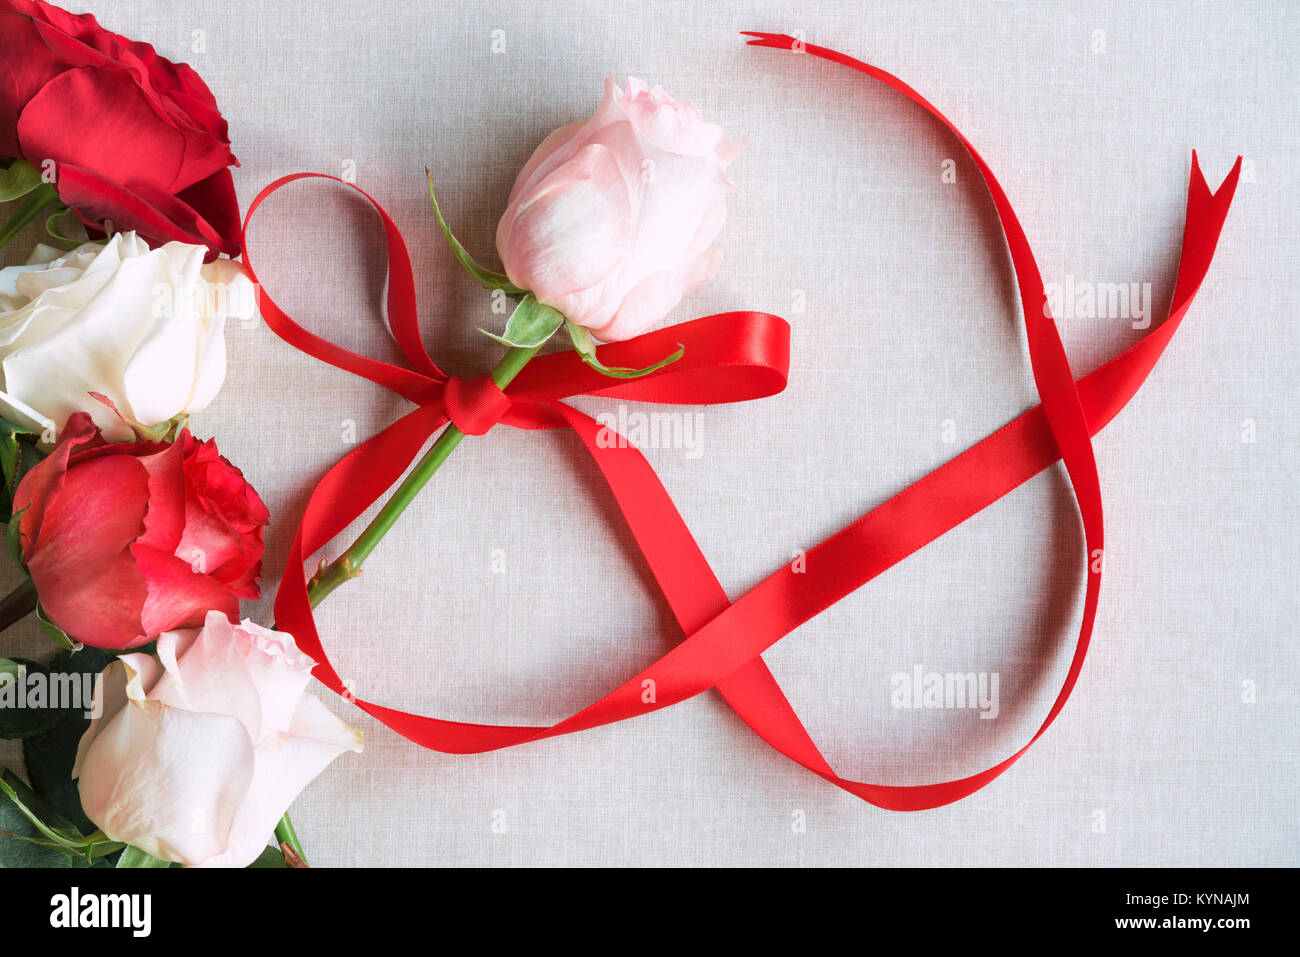 Tag der Frau Bild mit einem rosa mit roter Schleife in Form der Zahl 8,  durch rote und weiße Rosen umgeben gebunden Rose, auf einem vintage Stoff  Hintergrund Stockfotografie - Alamy